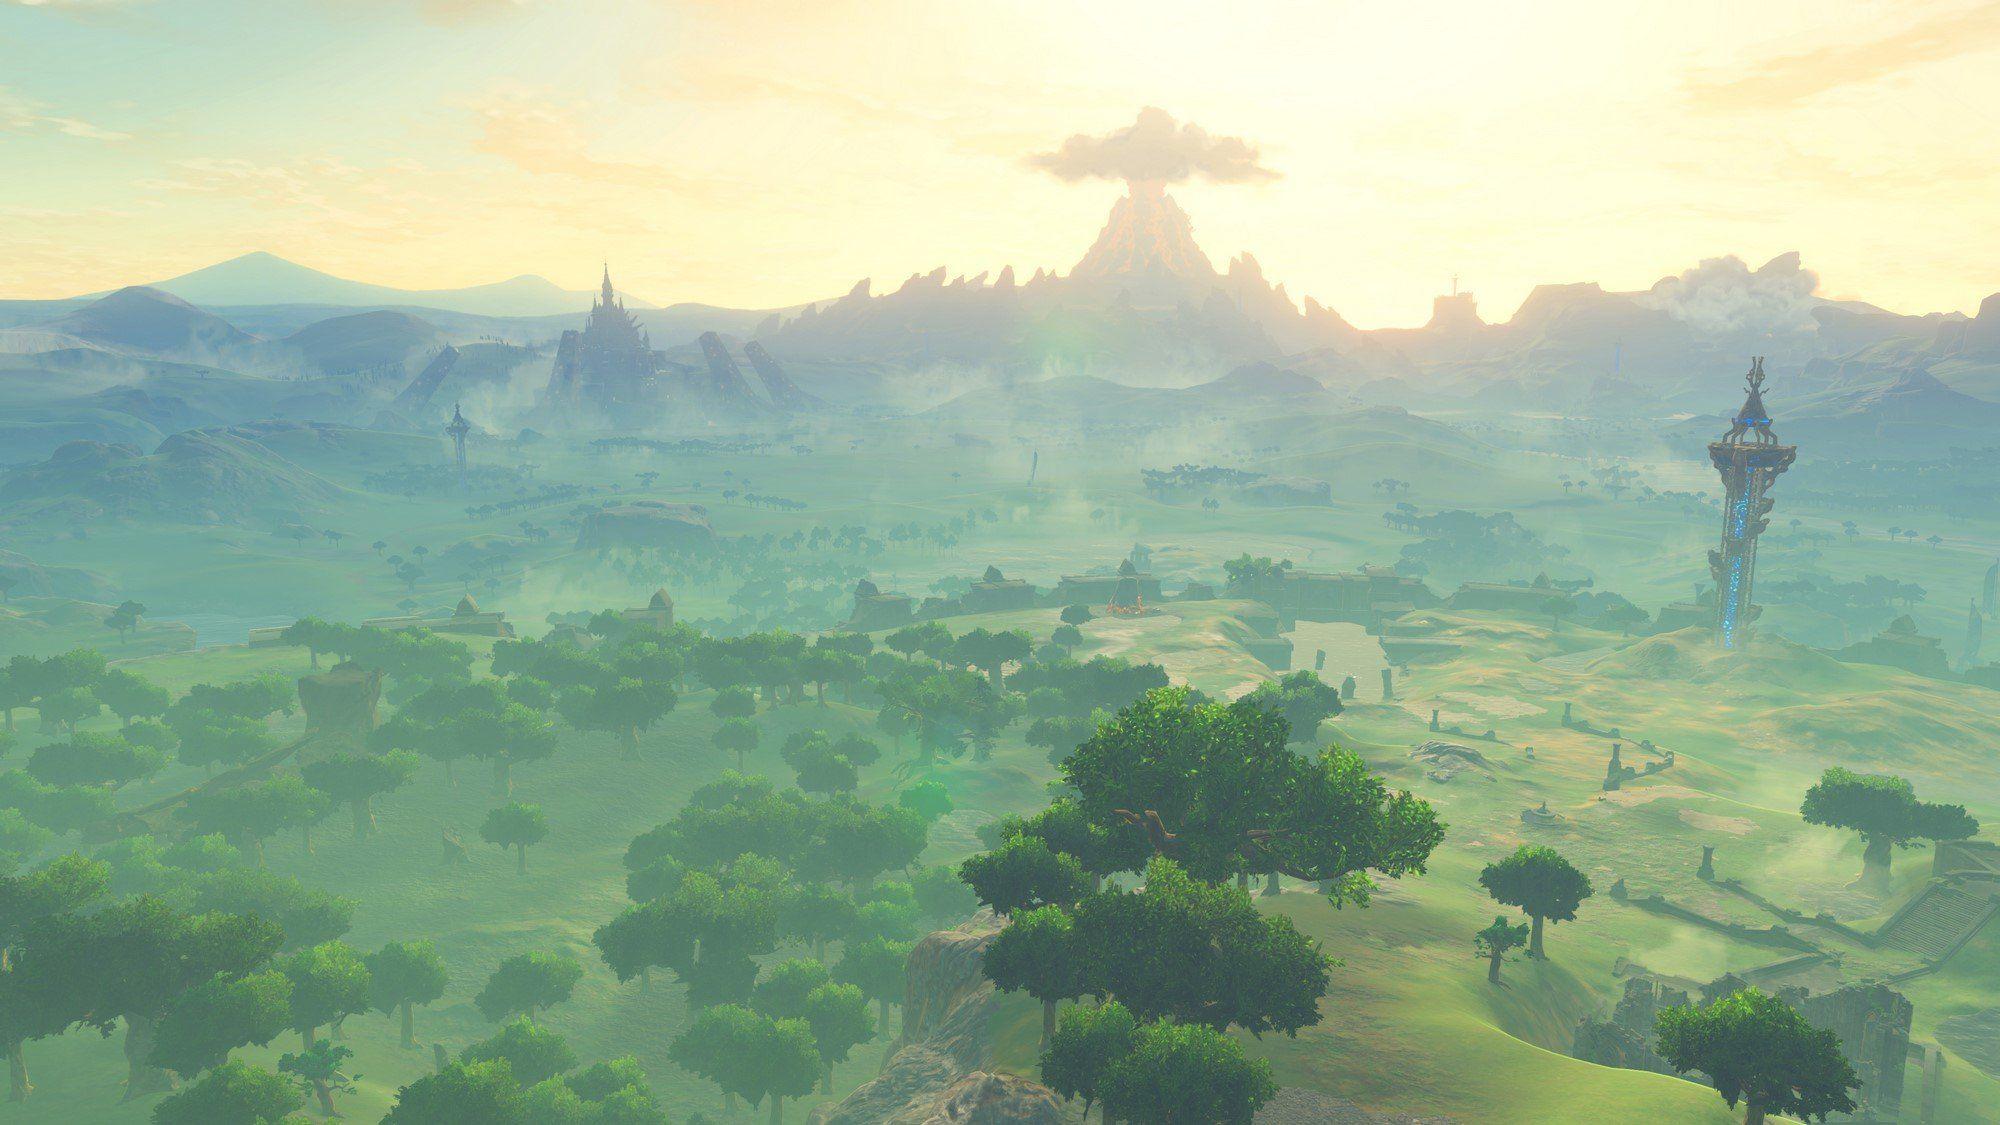 Gallery: The Artwork in Legend of Zelda: Breath of the Wild is